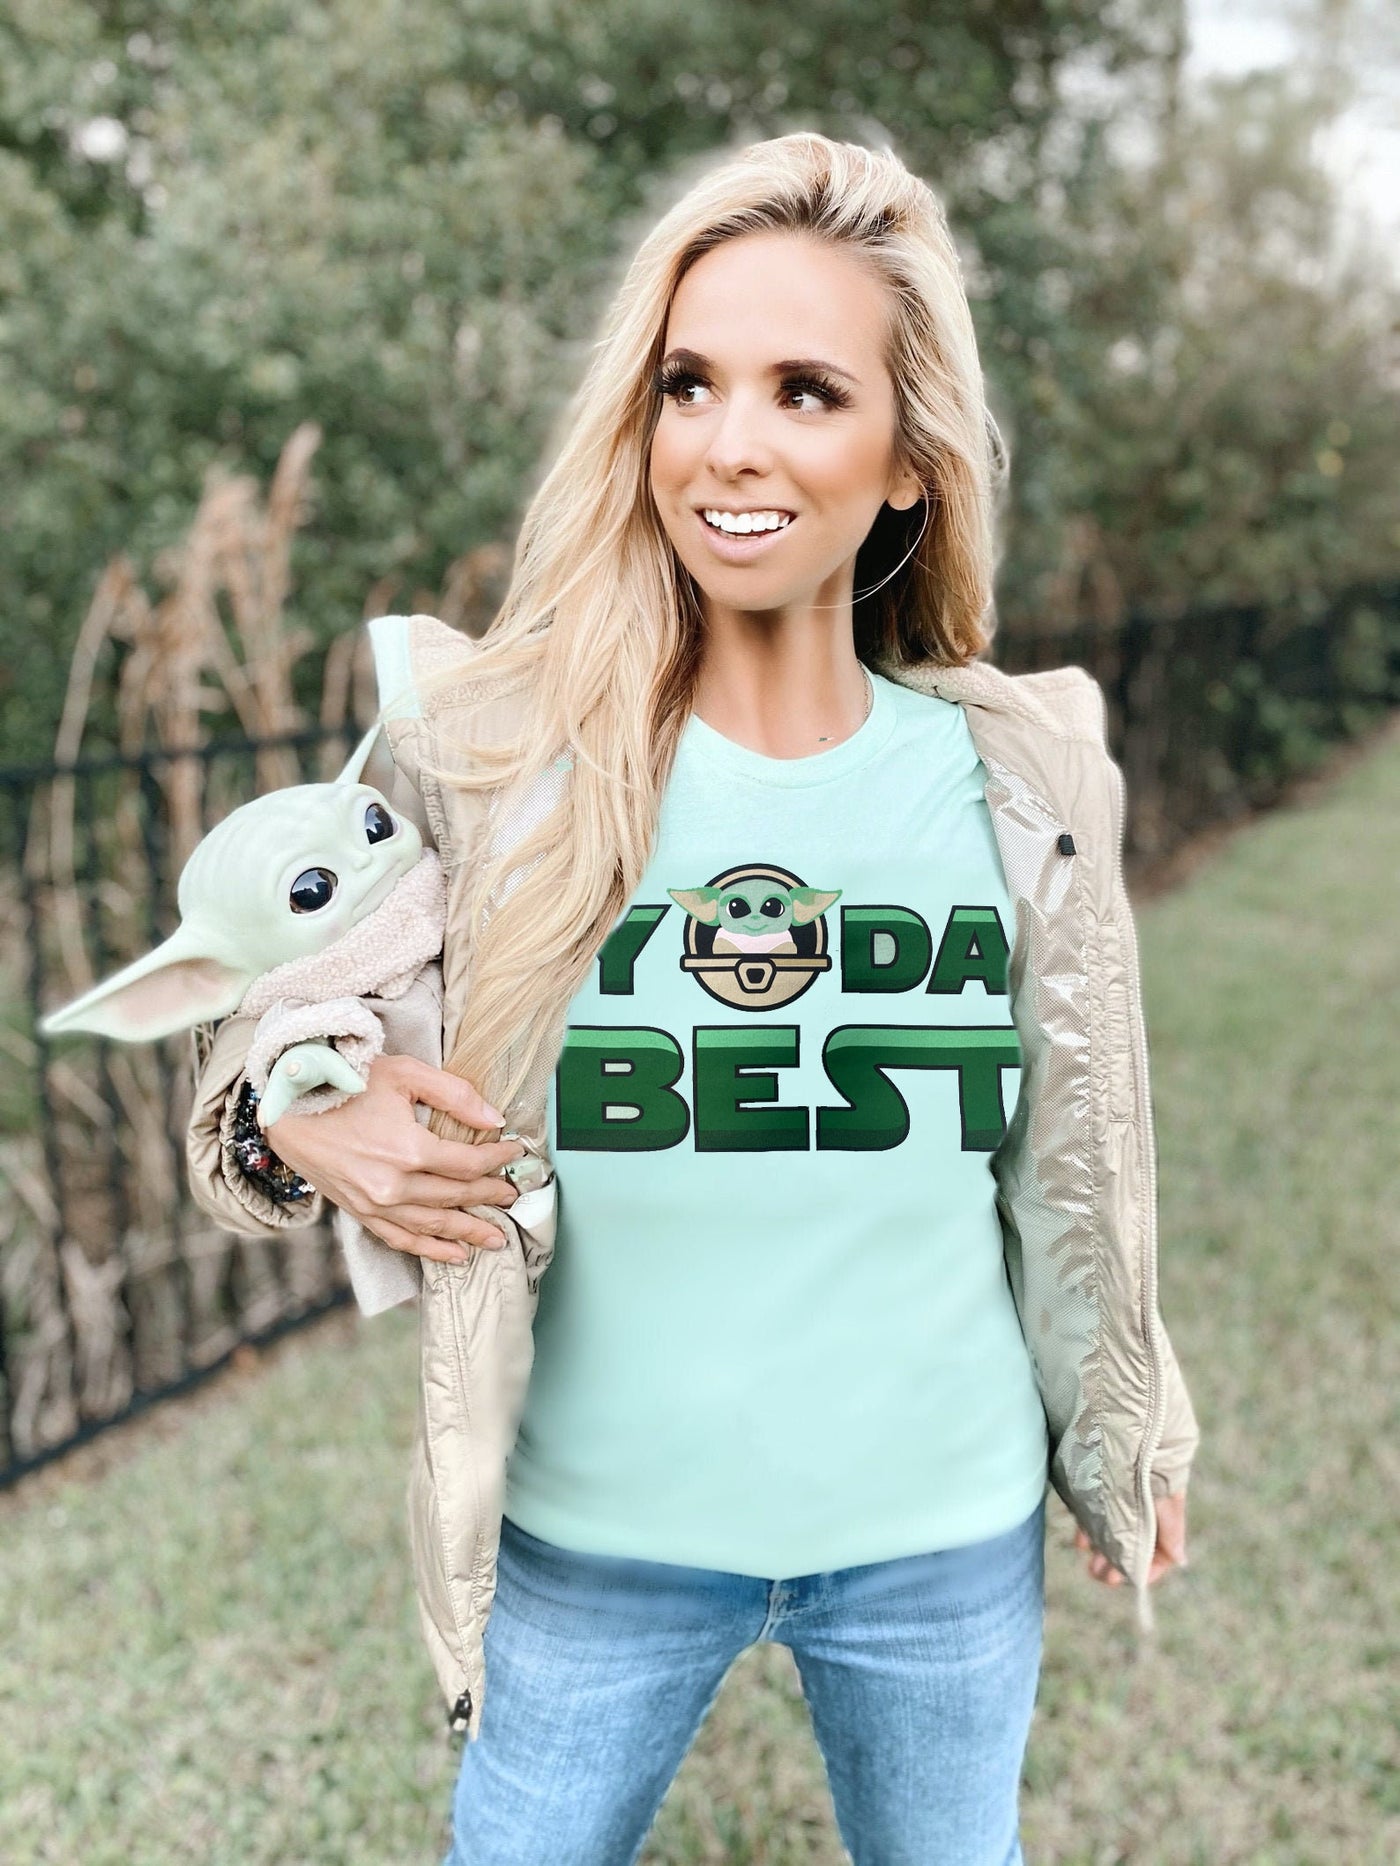 Yoda Best Shirt